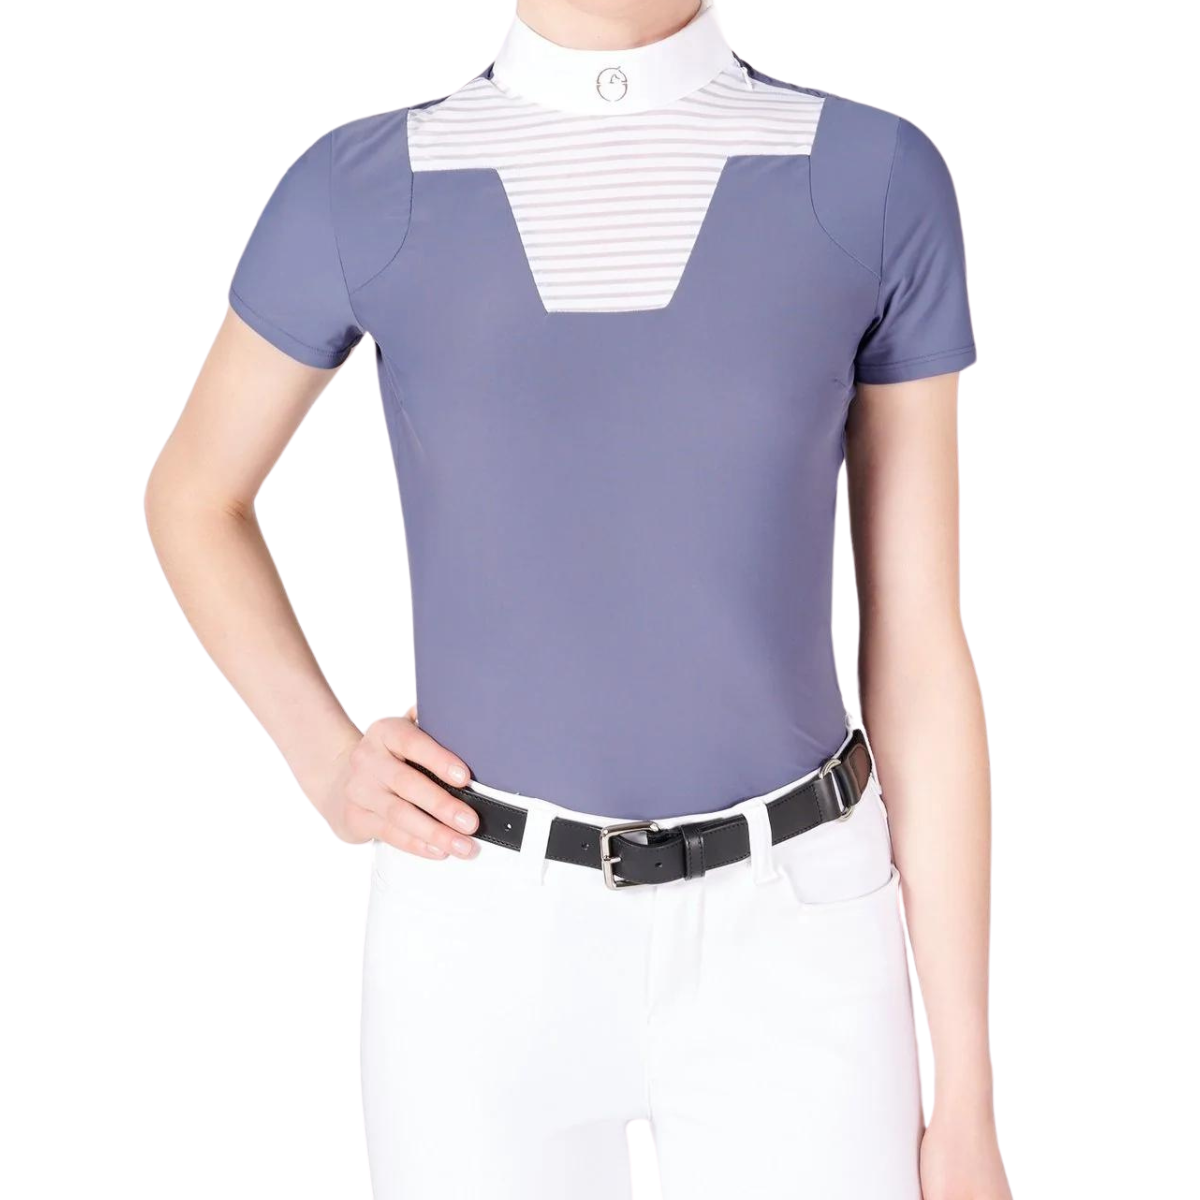 Vestrum Zagabria Show Shirt in Blue/White - Women's Small